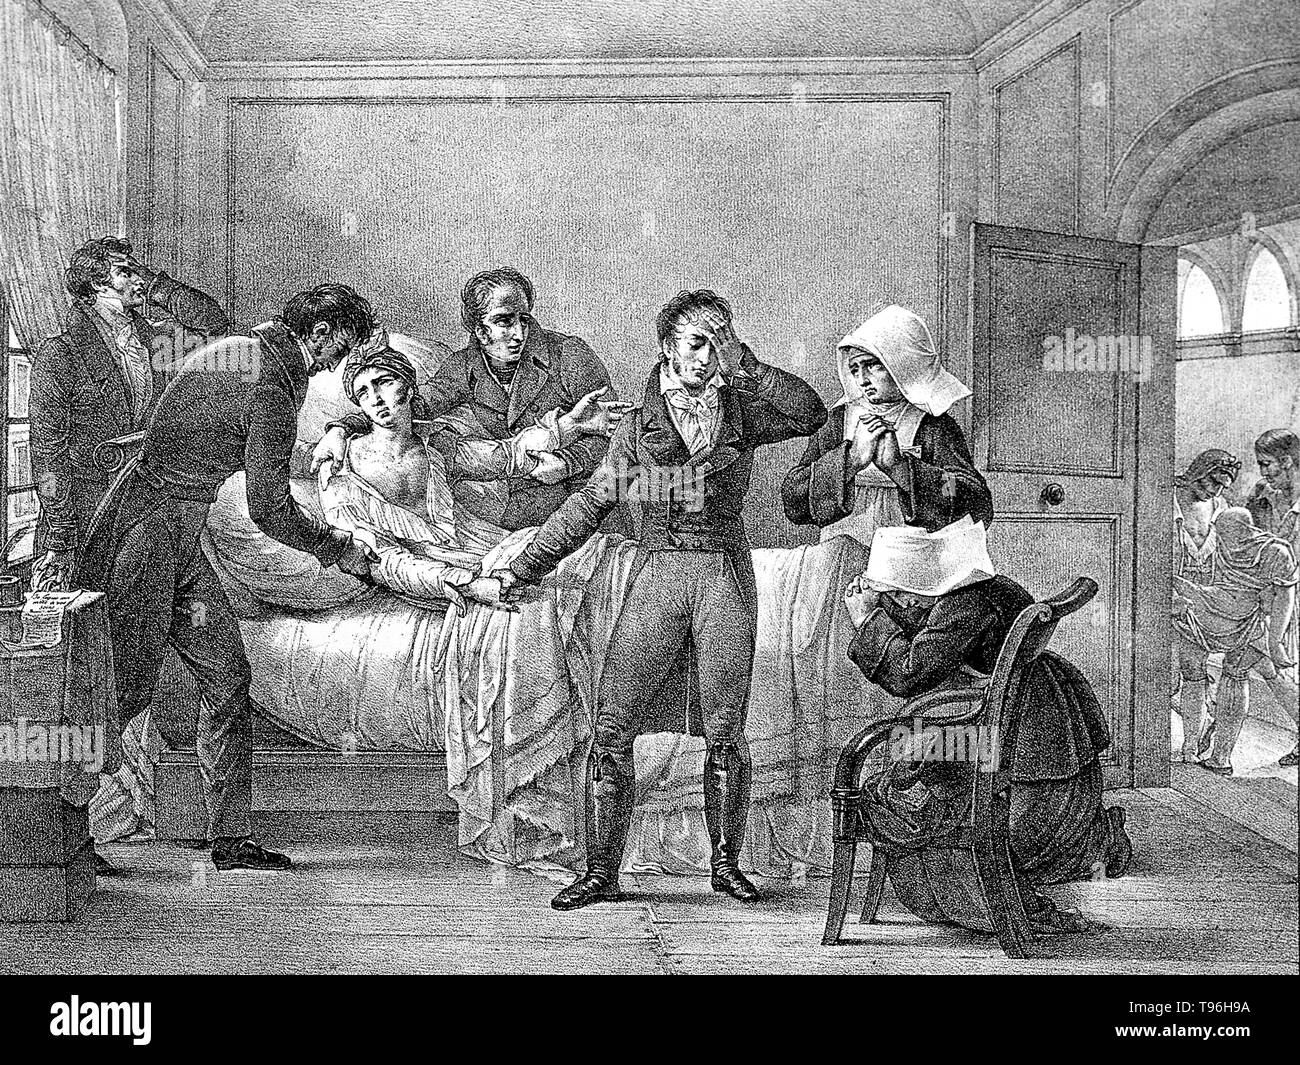 André Mazet (Décembre 1793 - Octobre 22, 1821) est un médecin français. Son livre, ''Observations sur la fievre jaune, faites un Cadix, en 1819'' est un compte d'une épidémie de fièvre jaune dans la région de Cadix. Mazet a été l'un des cinq membres de la commission médicale envoyée à Barcelone par le gouvernement français pour lutter contre l'épidémie de fièvre jaune. Il est arrivé à Barcelone le 8 octobre et a été presque immédiatement infecté par la fièvre jaune, et est mort en même temps que plusieurs milliers de citoyens pendant l'épidémie de 1821. Aucun artiste crédité, reproduction d'une lithographie, 1821. Banque D'Images